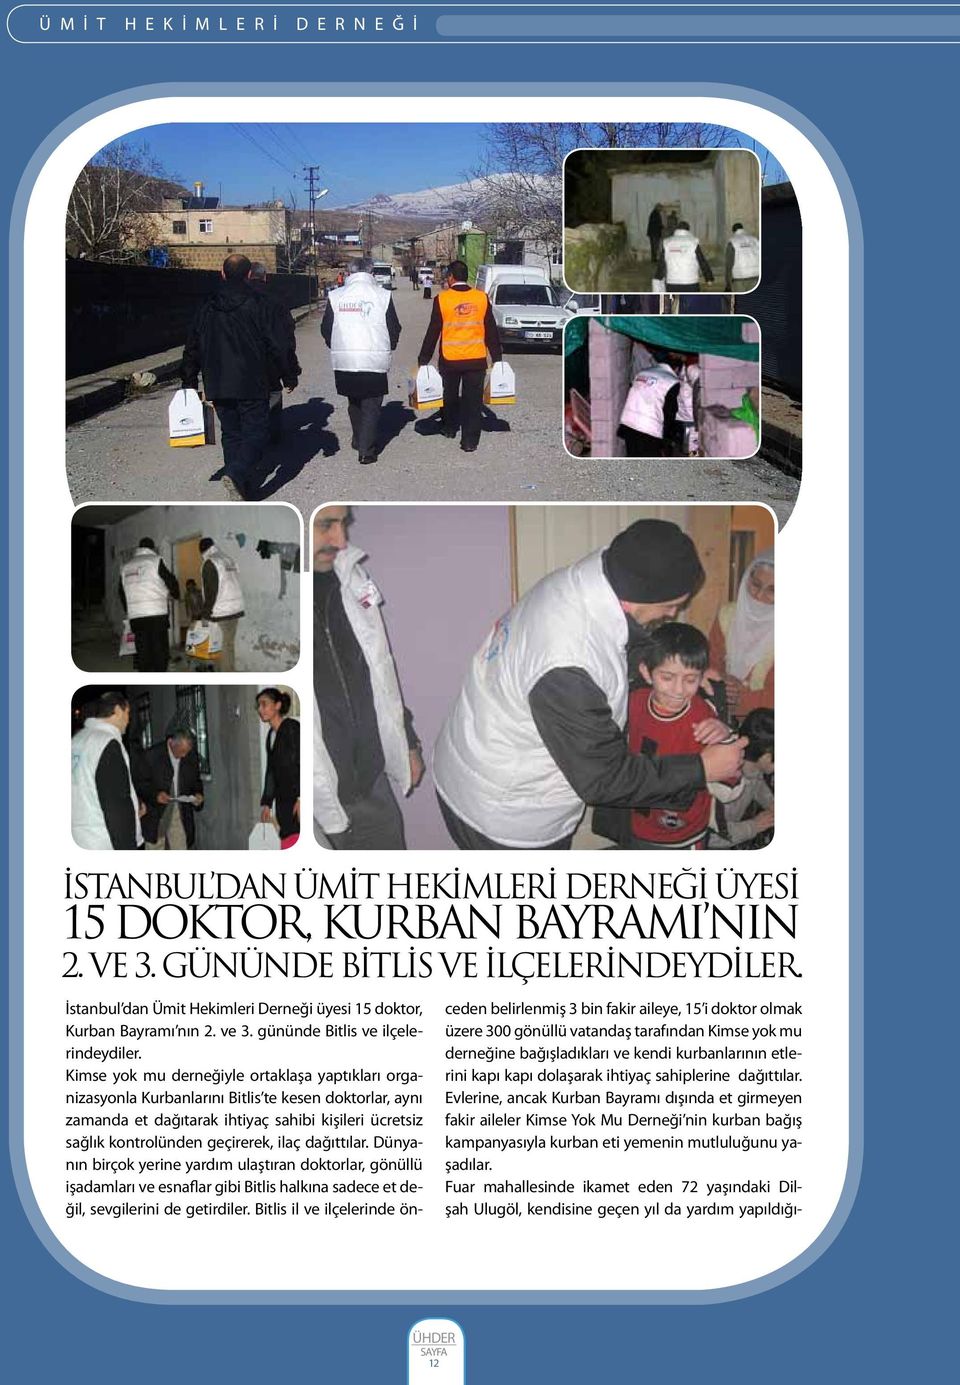 Kimse yok mu derneğiyle ortaklaşa yaptıkları organizasyonla Kurbanlarını Bitlis te kesen doktorlar, aynı zamanda et dağıtarak ihtiyaç sahibi kişileri ücretsiz sağlık kontrolünden geçirerek, ilaç